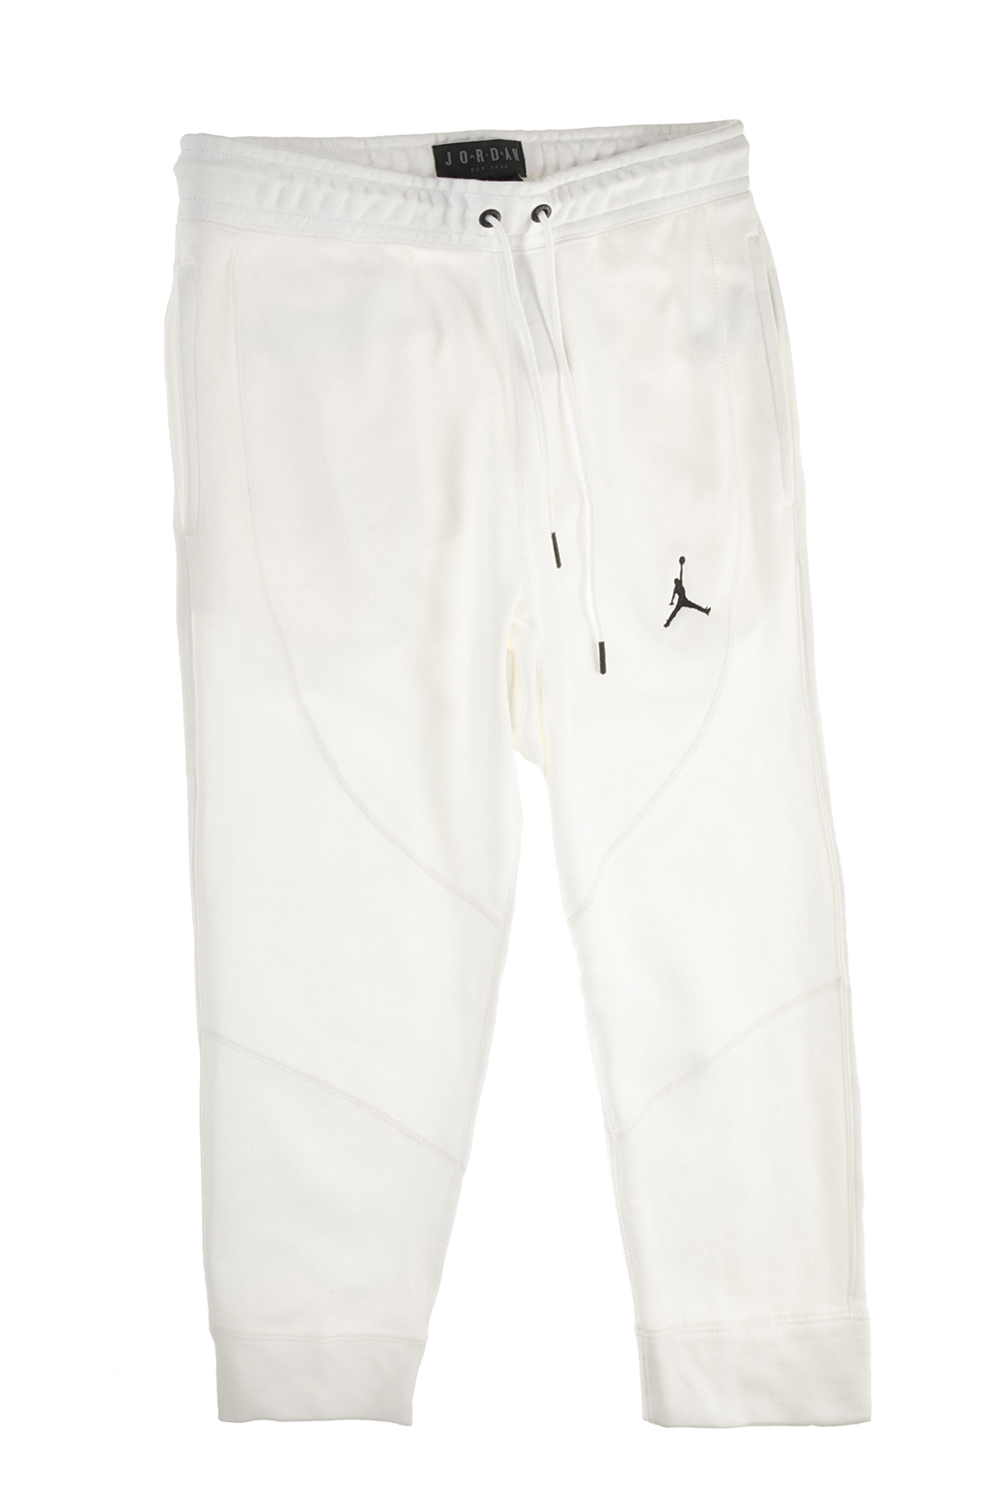 NIKE Παιδικό παντελόνι φόρμας NIKE JSW WINGS FLEECE 3/4 λευκό